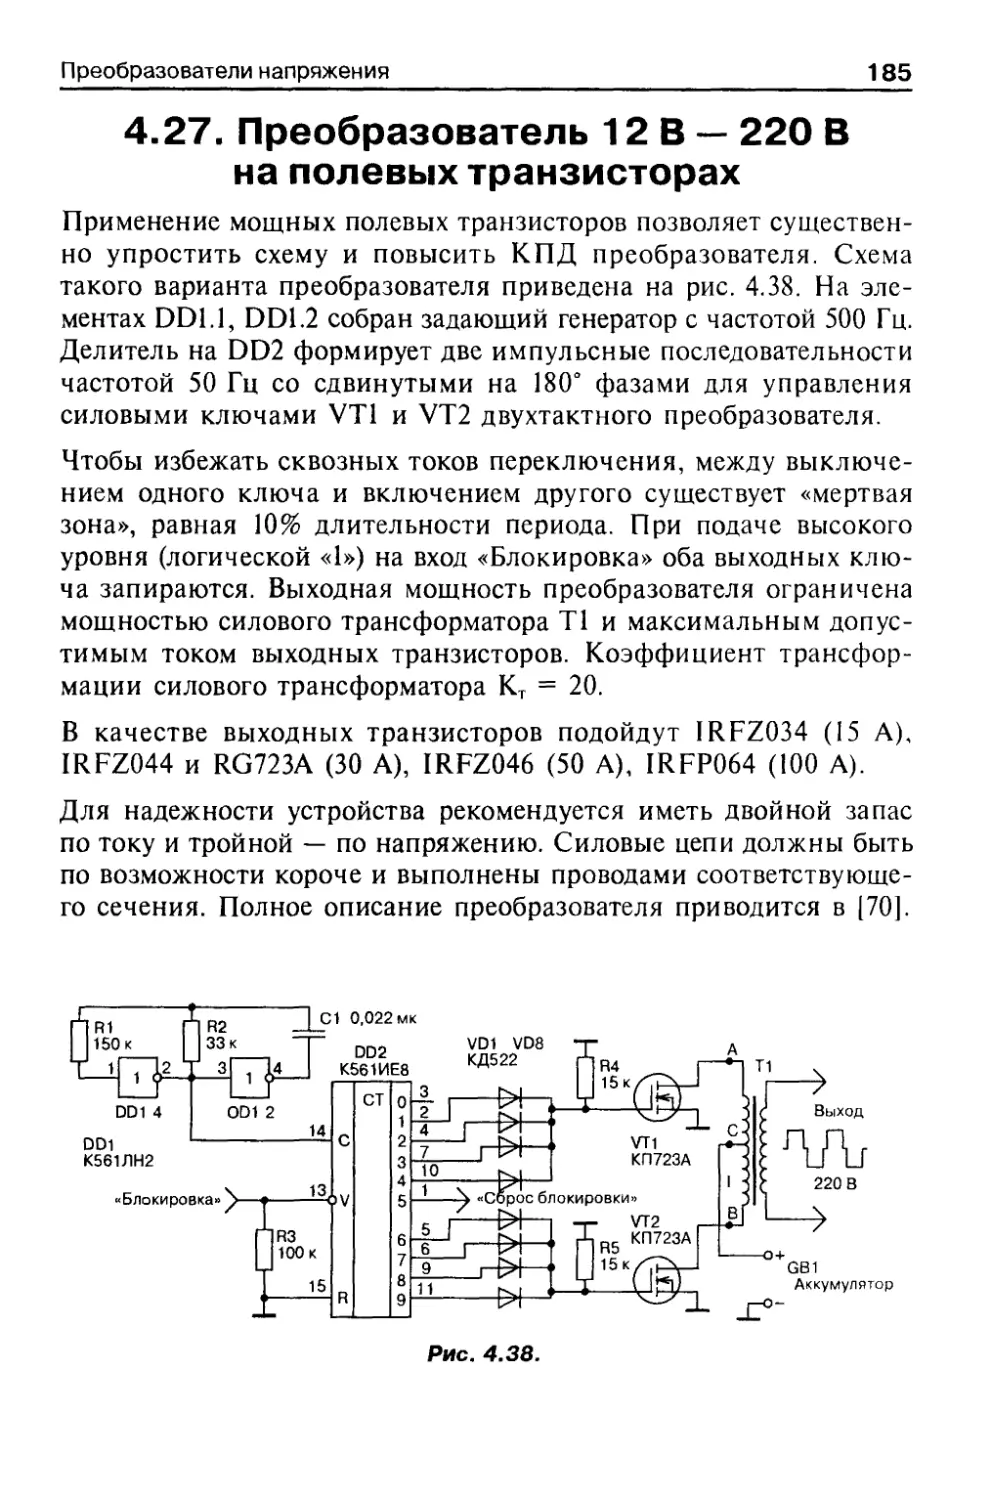 Преобразователь 12 В — 220 В на полевых транзисторах